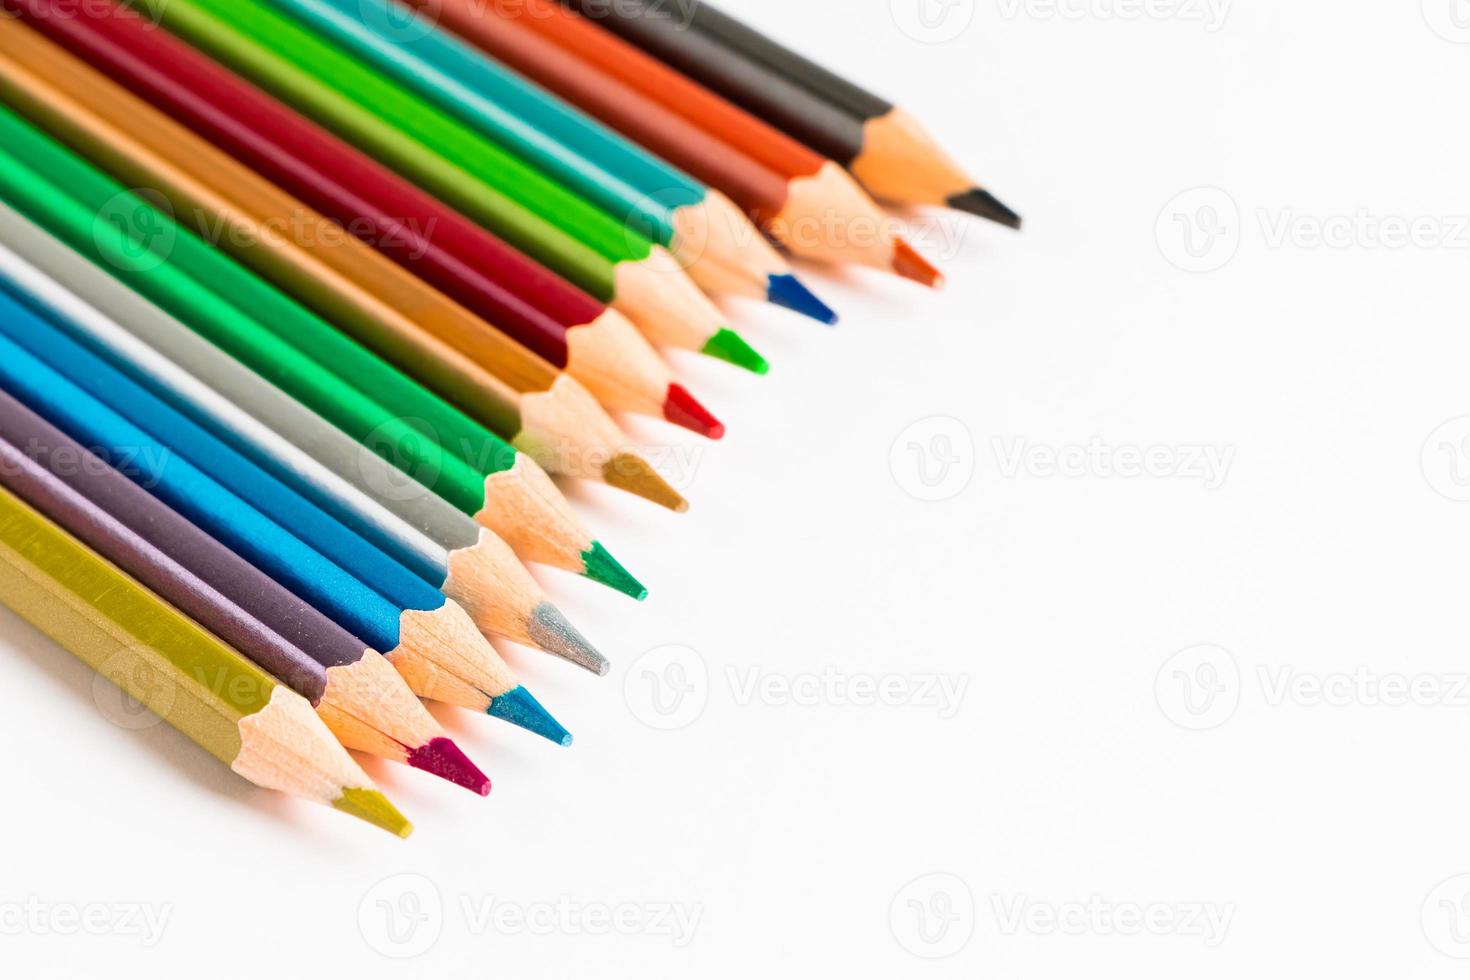 https://static.vecteezy.com/ti/photos-gratuite/p1/2965075-crayons-de-couleur-en-bois-isole-sur-fond-blanc-palette-multi-colore-pour-dessin-lieu-pour-texte-photo.jpg